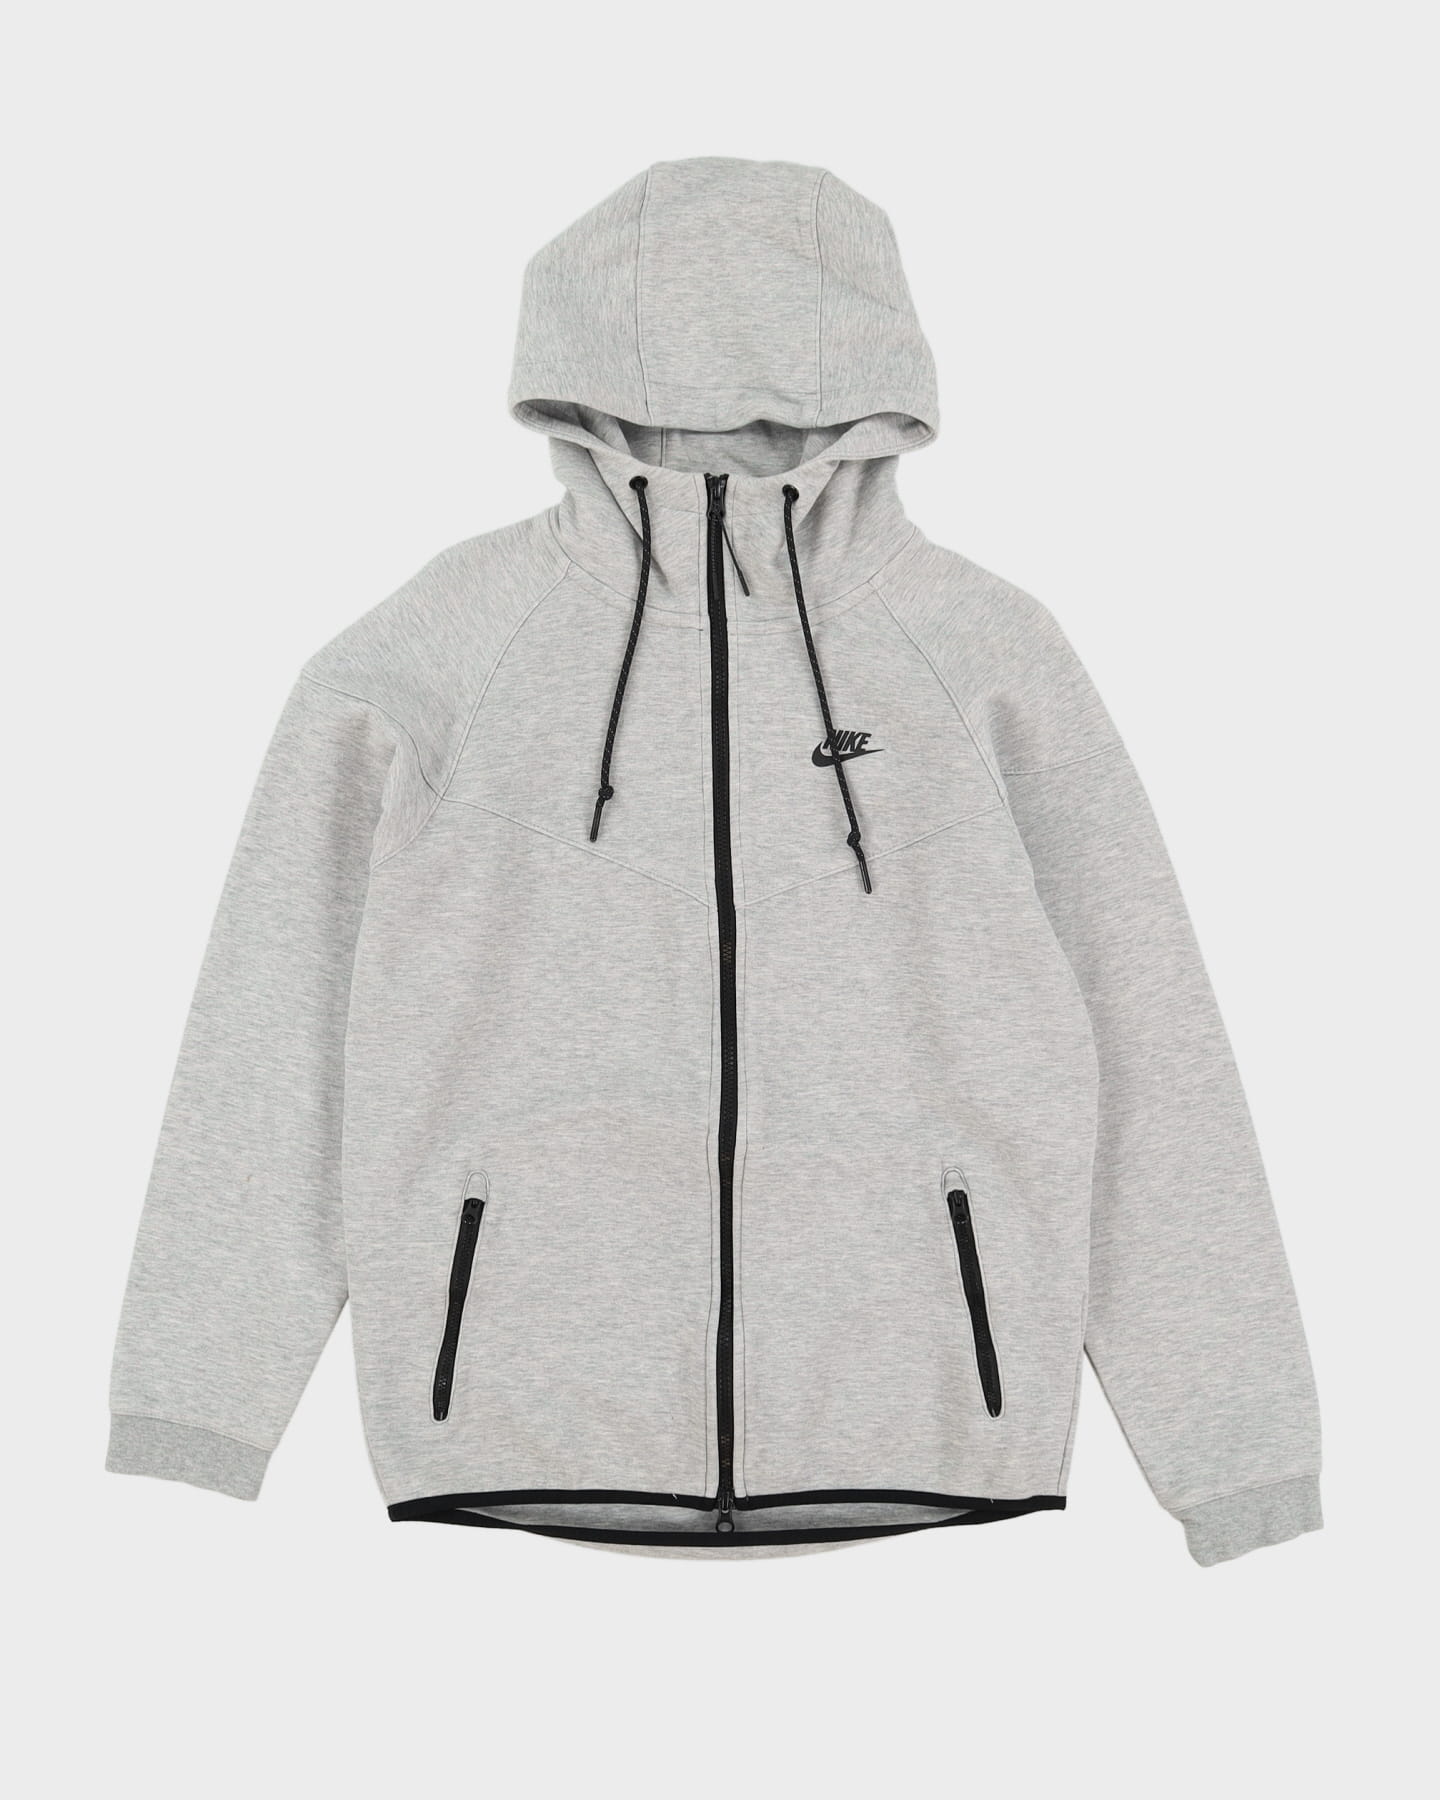 Nike Grey Full-Zip Hoodie - M